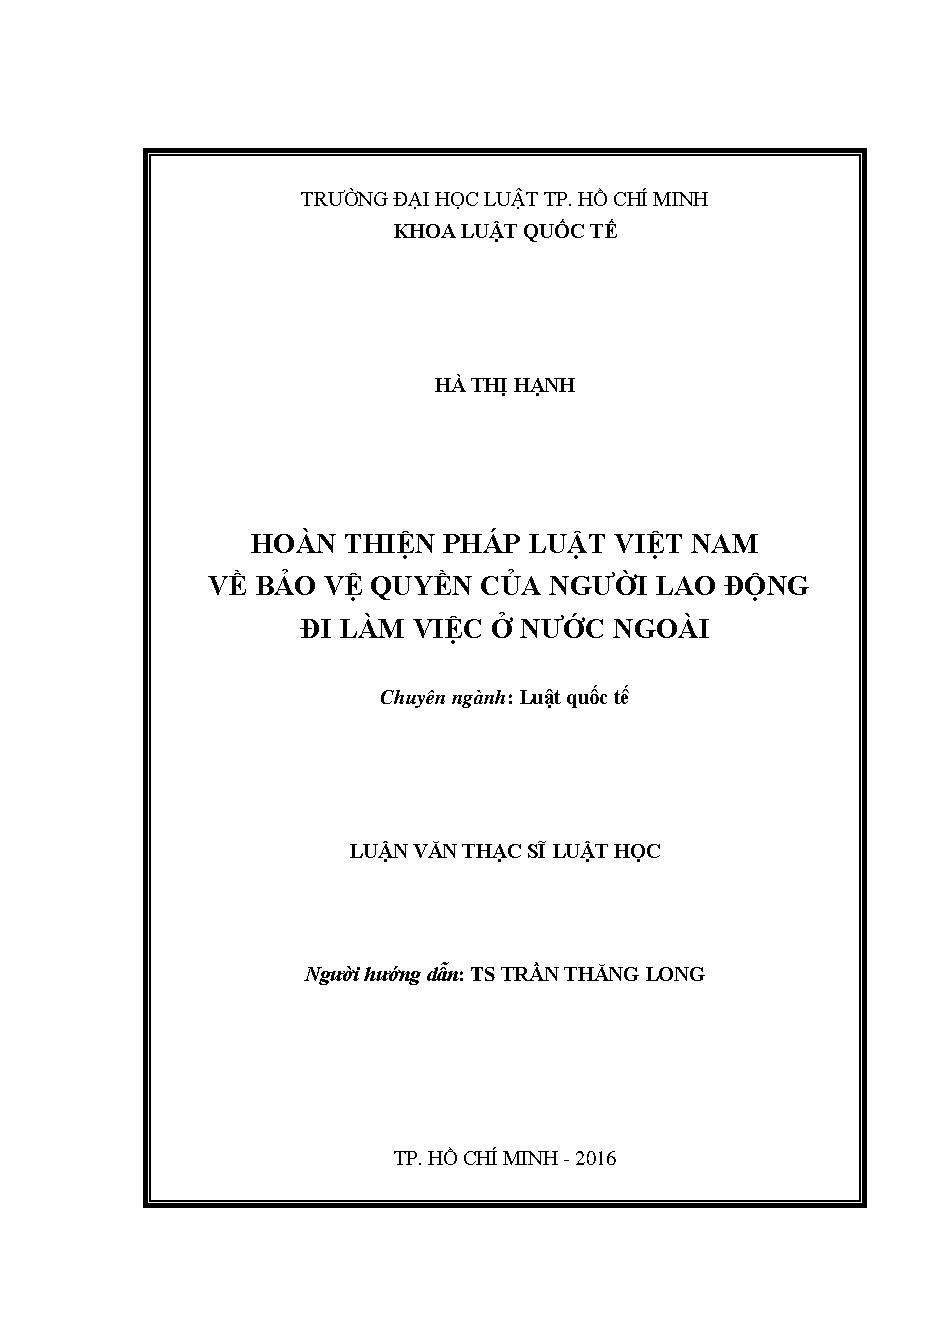 Hoàn thiện pháp luật Việt Nam về bảo vệ quyền của người lao động đi làm việc ở nước ngoài